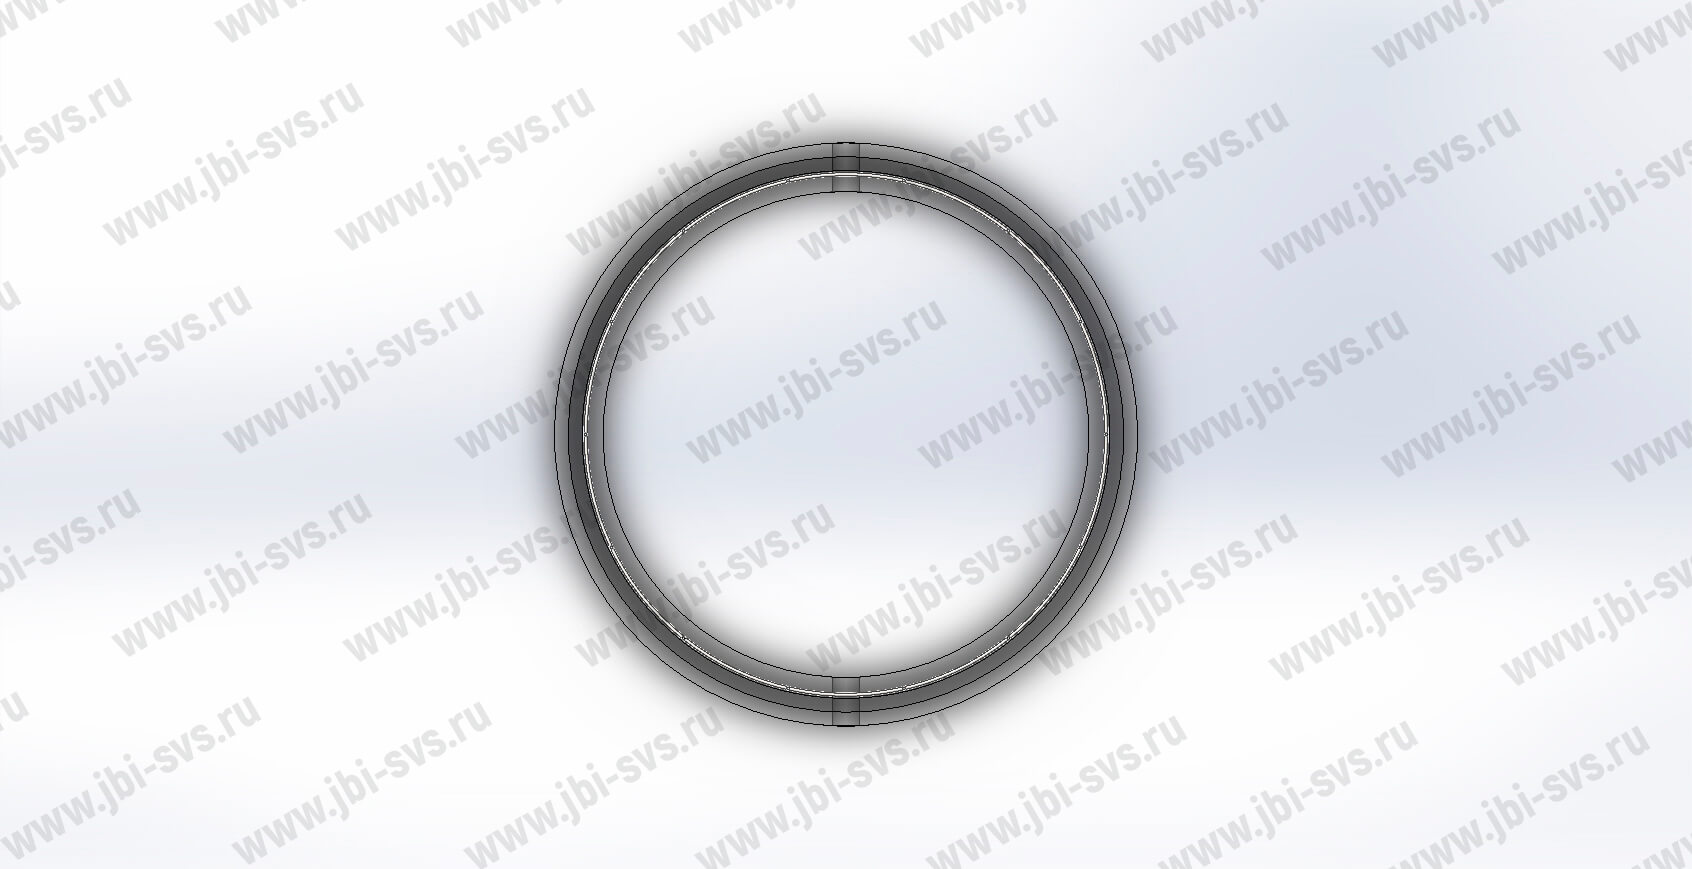 КС 7.9 с фальцем (пазом) – Железобетонные кольца для колодцев и септиков в  Севастополе от производителя!